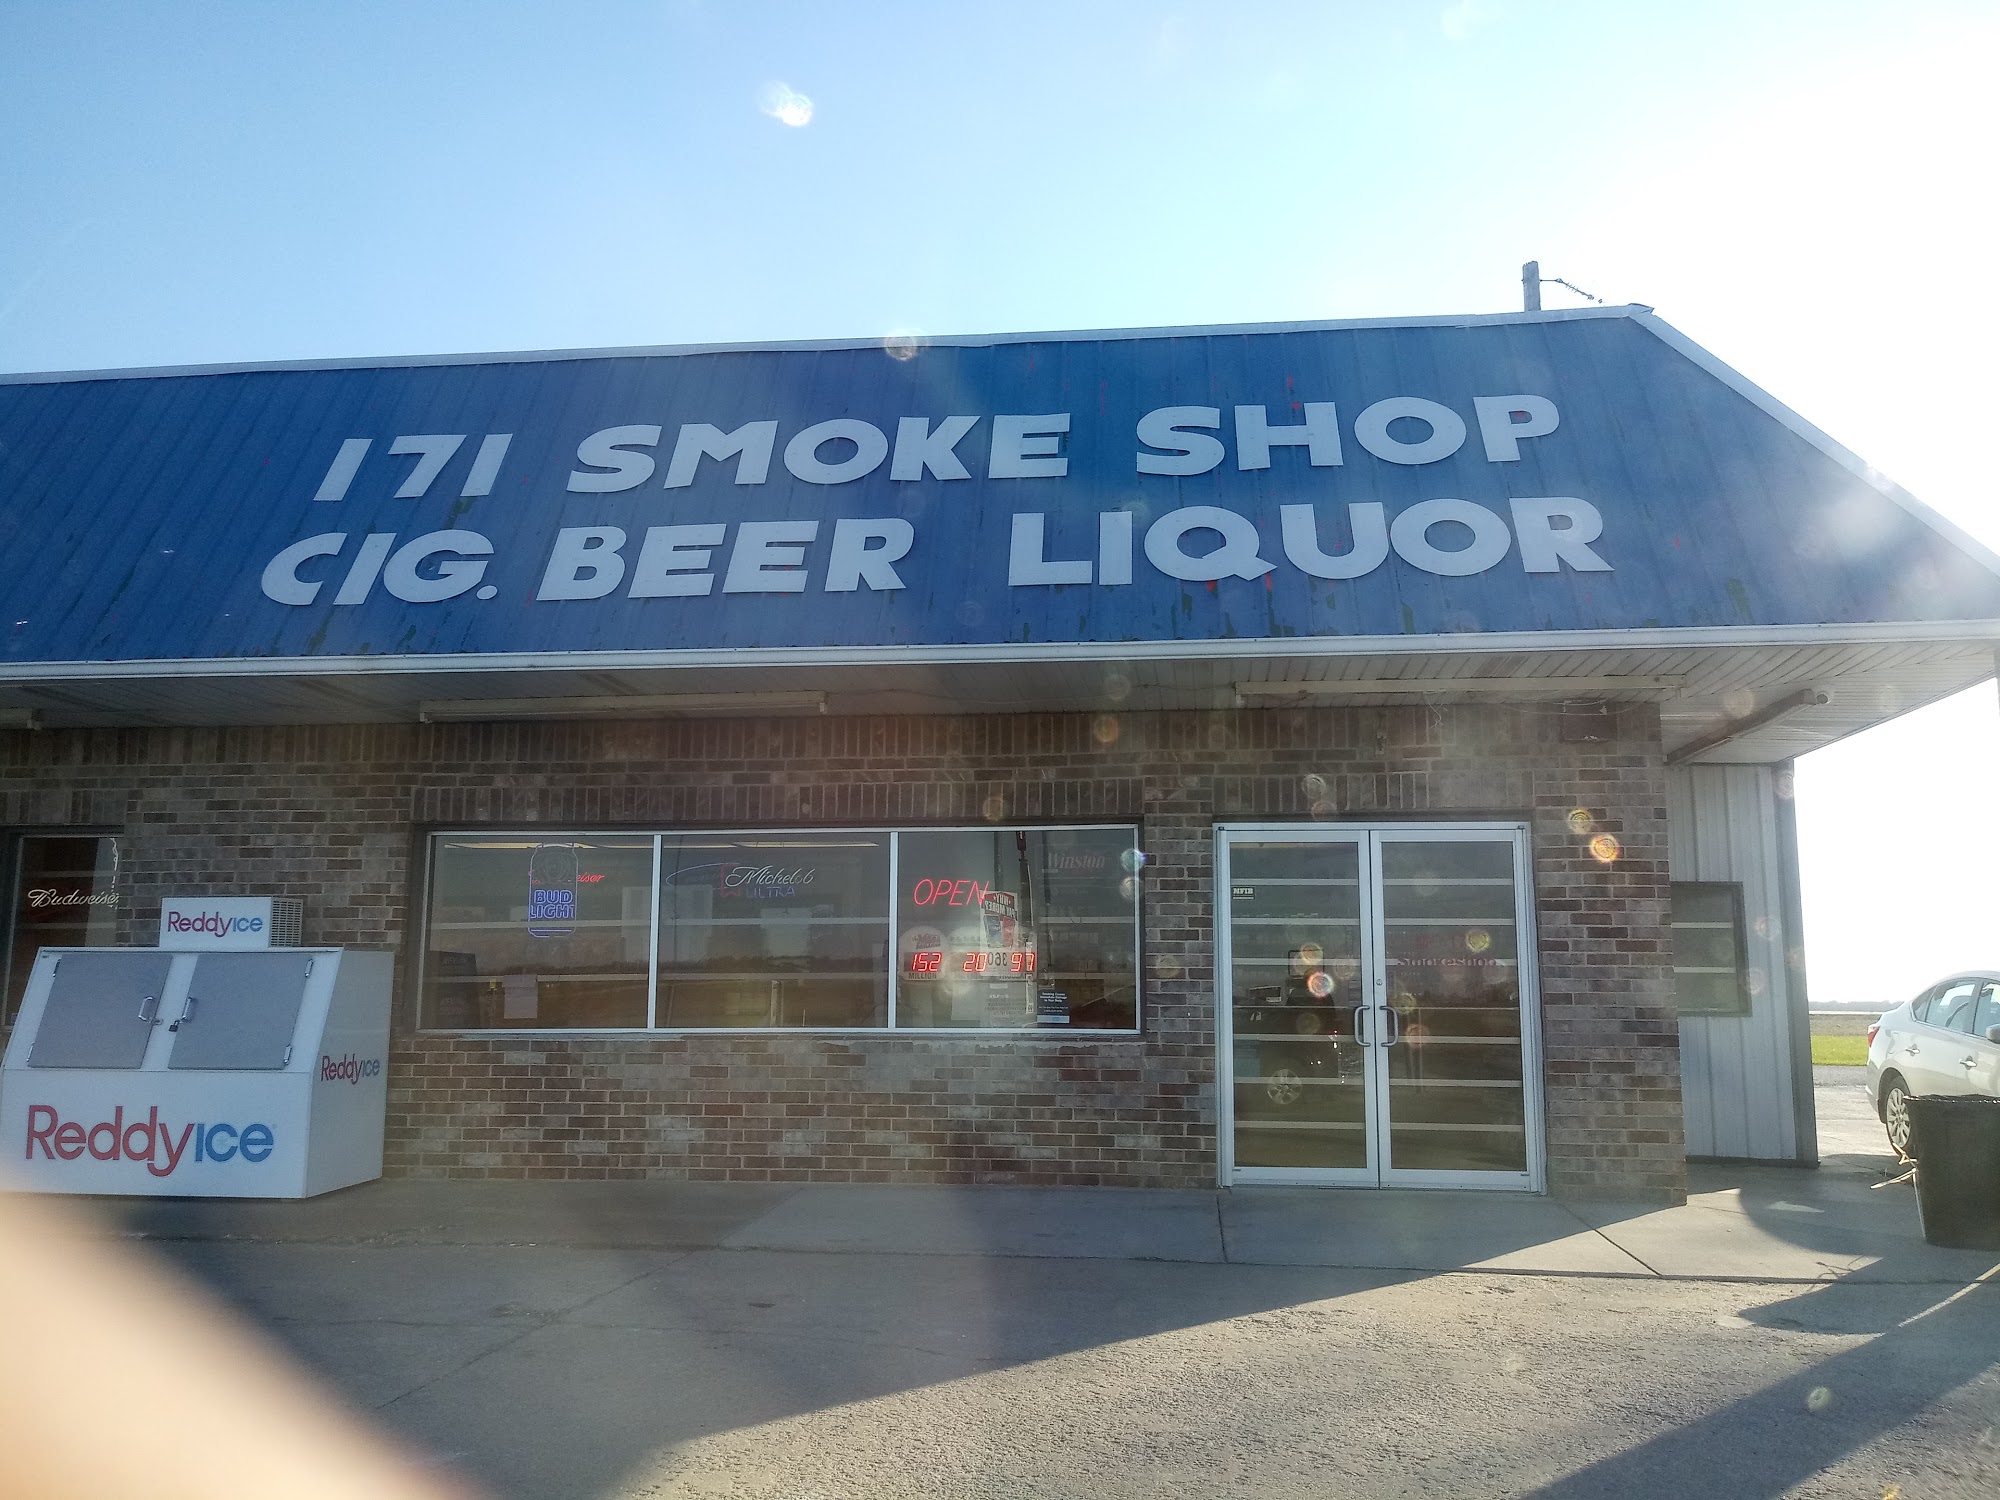 171 Smoke Shop